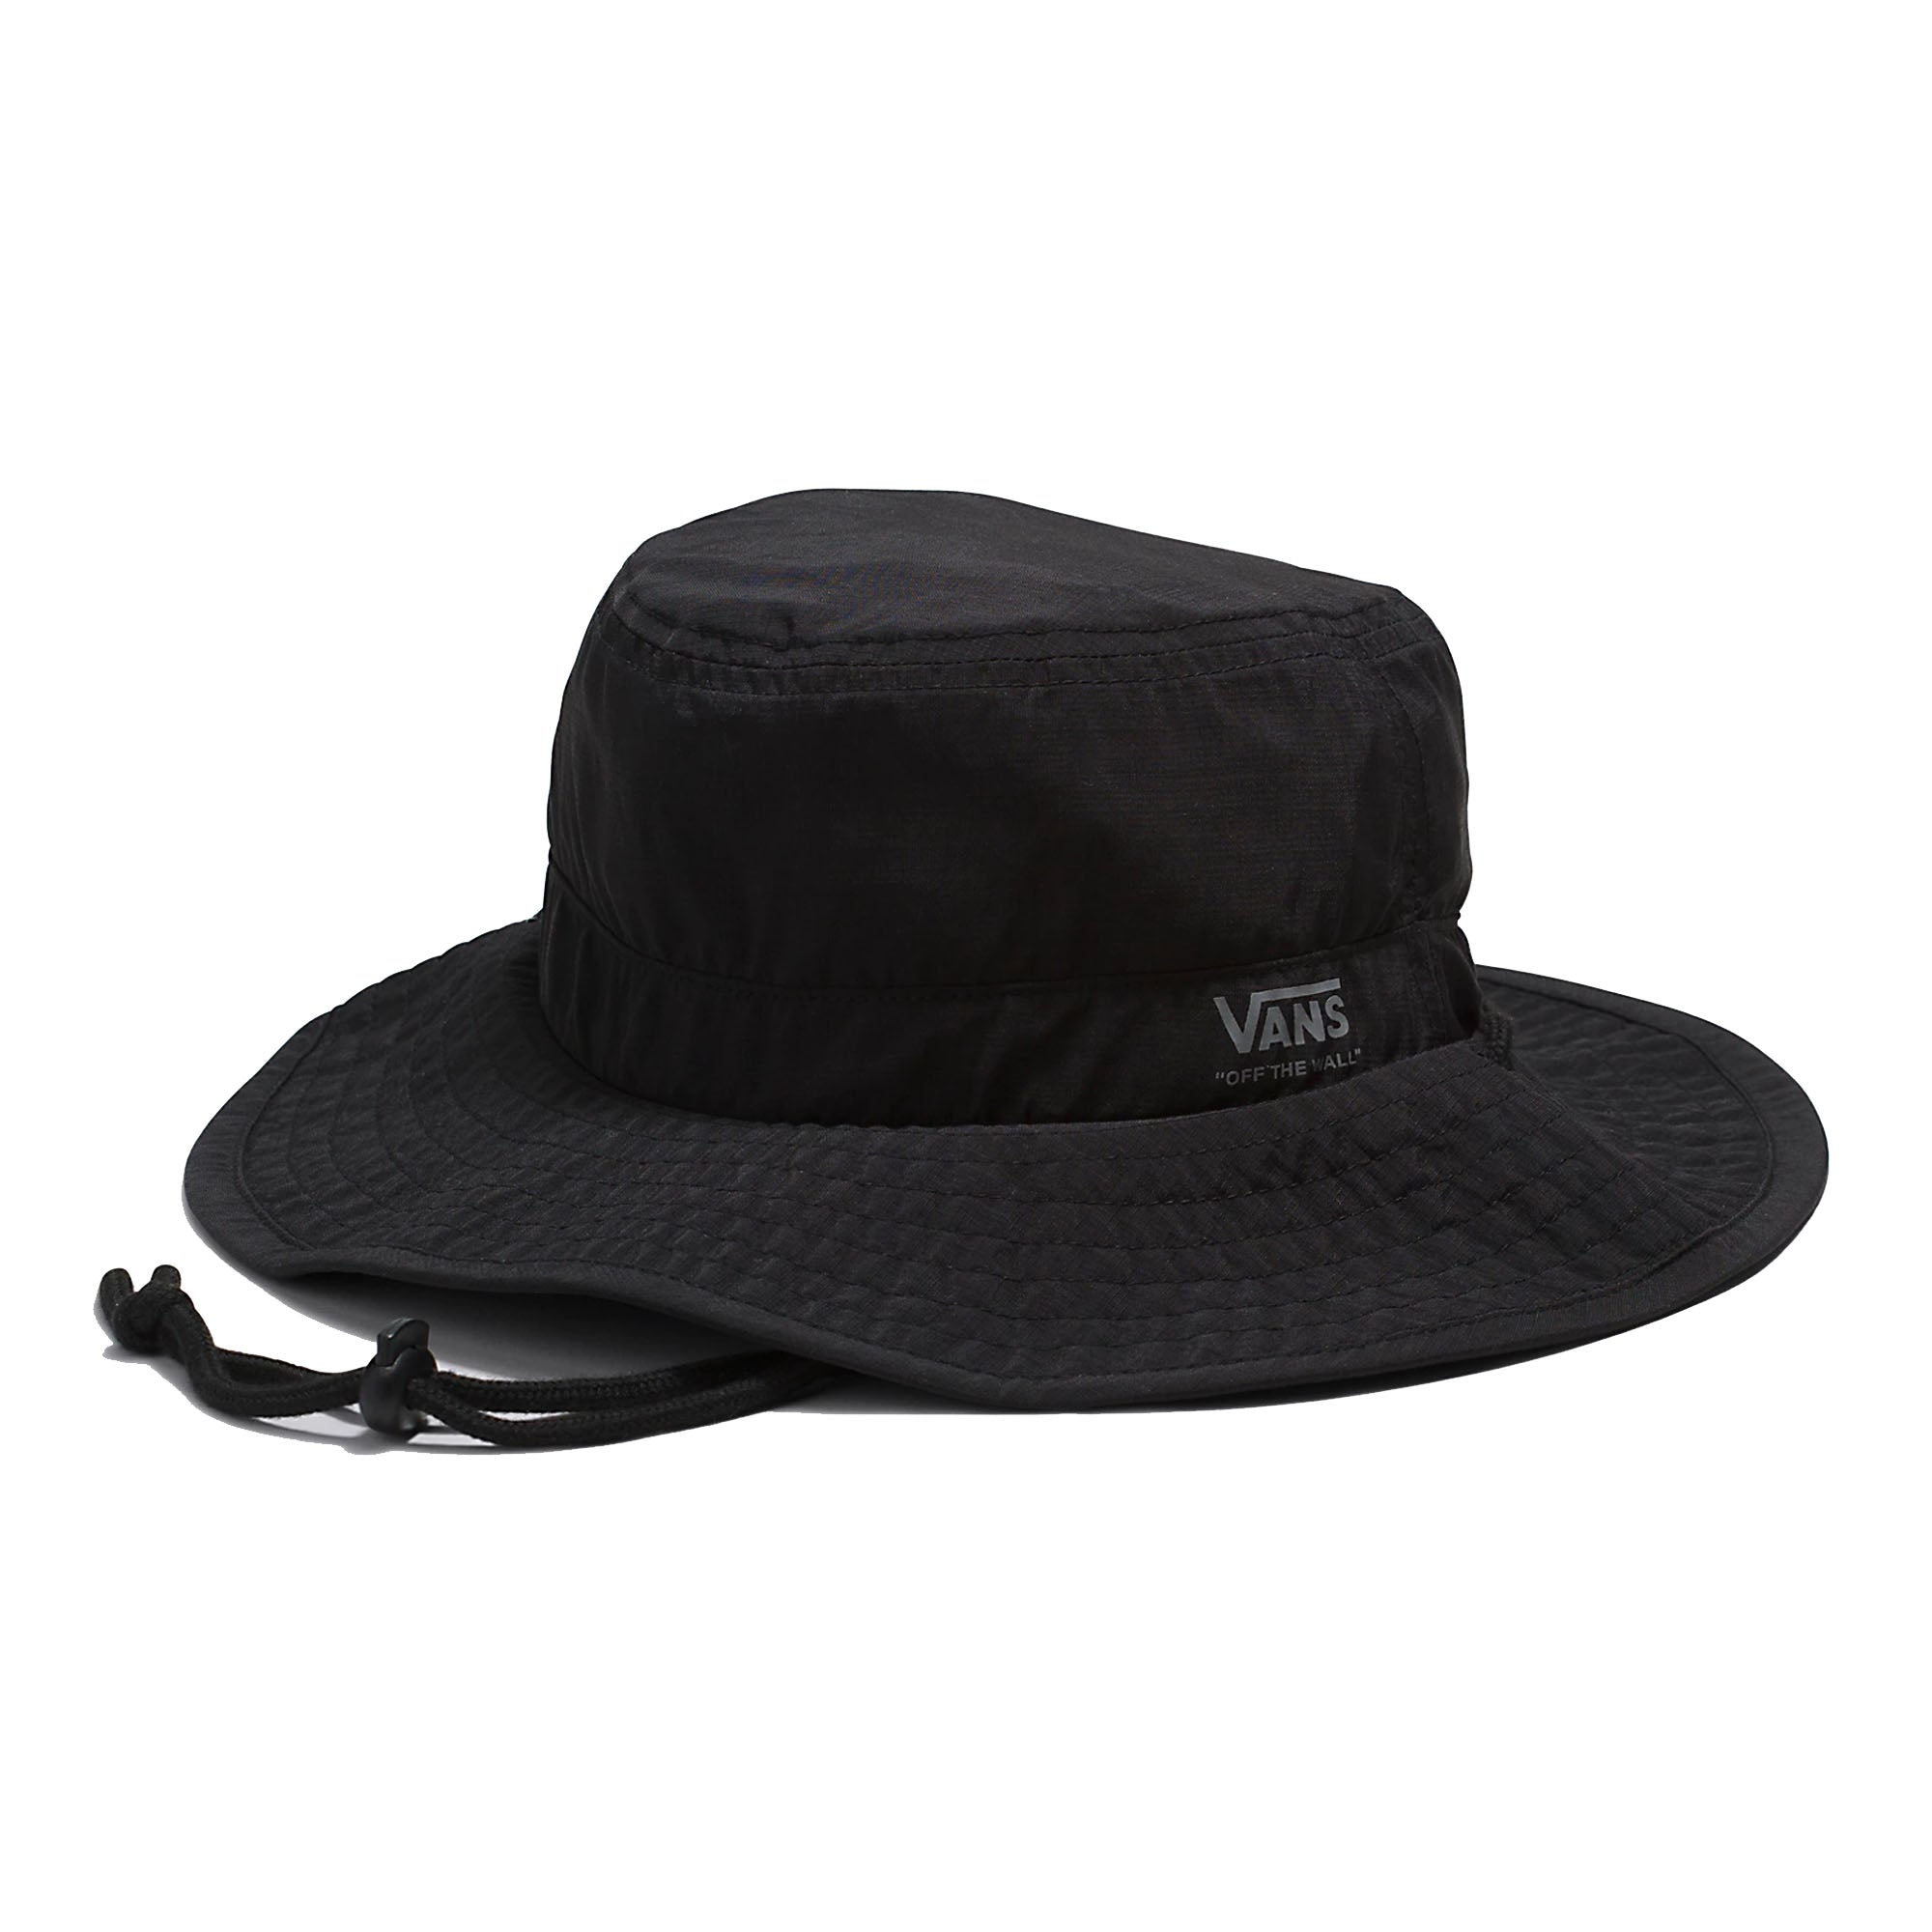 Vans Outdoors Boonie Men's Bucket Hat